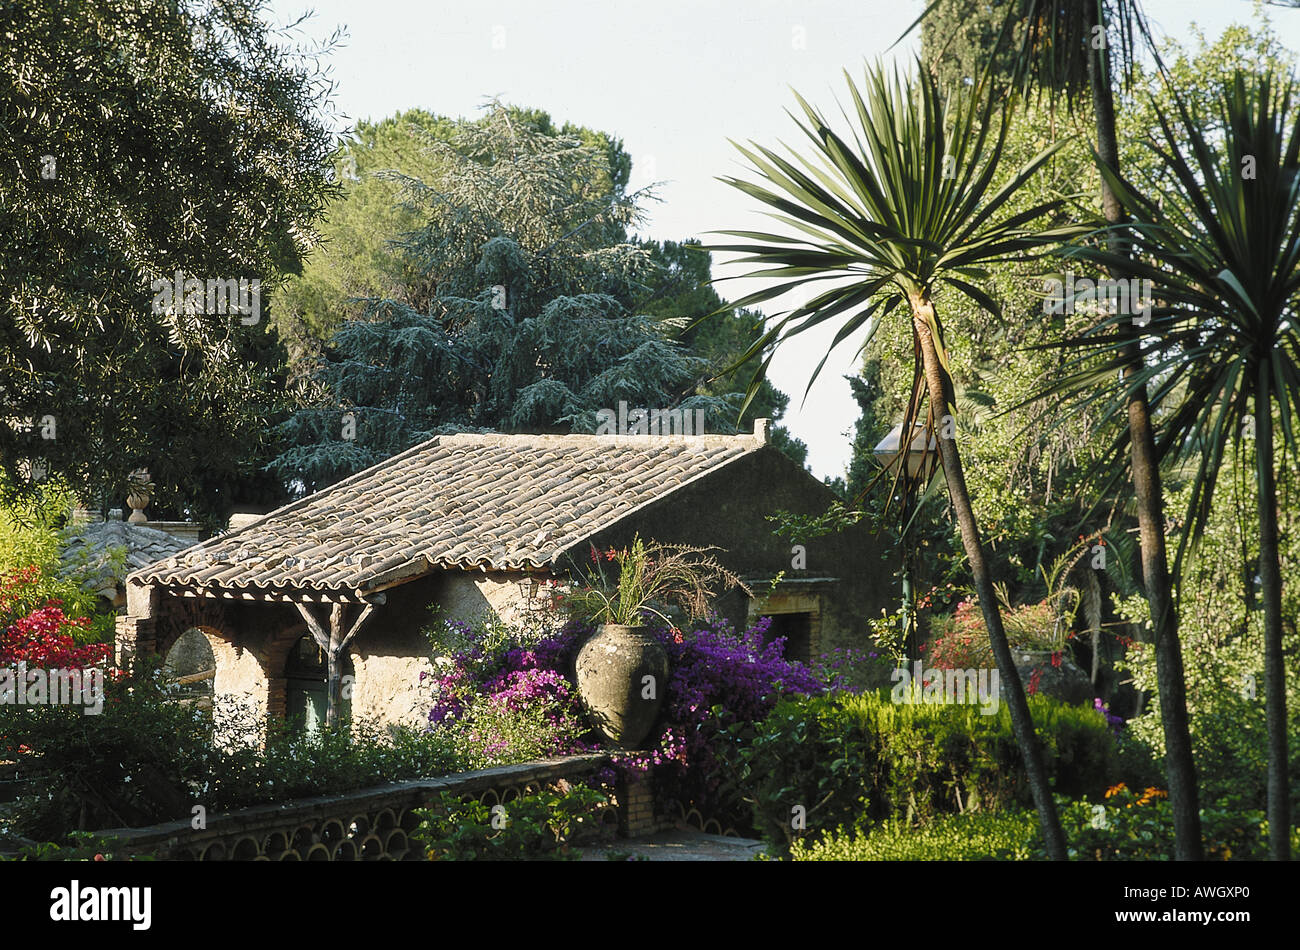 L'Italia, in Sicilia, a nord-est della Sicilia, Taomina, tetto di tegole edificio, giardini pubblici con palme e piante esotiche Foto Stock